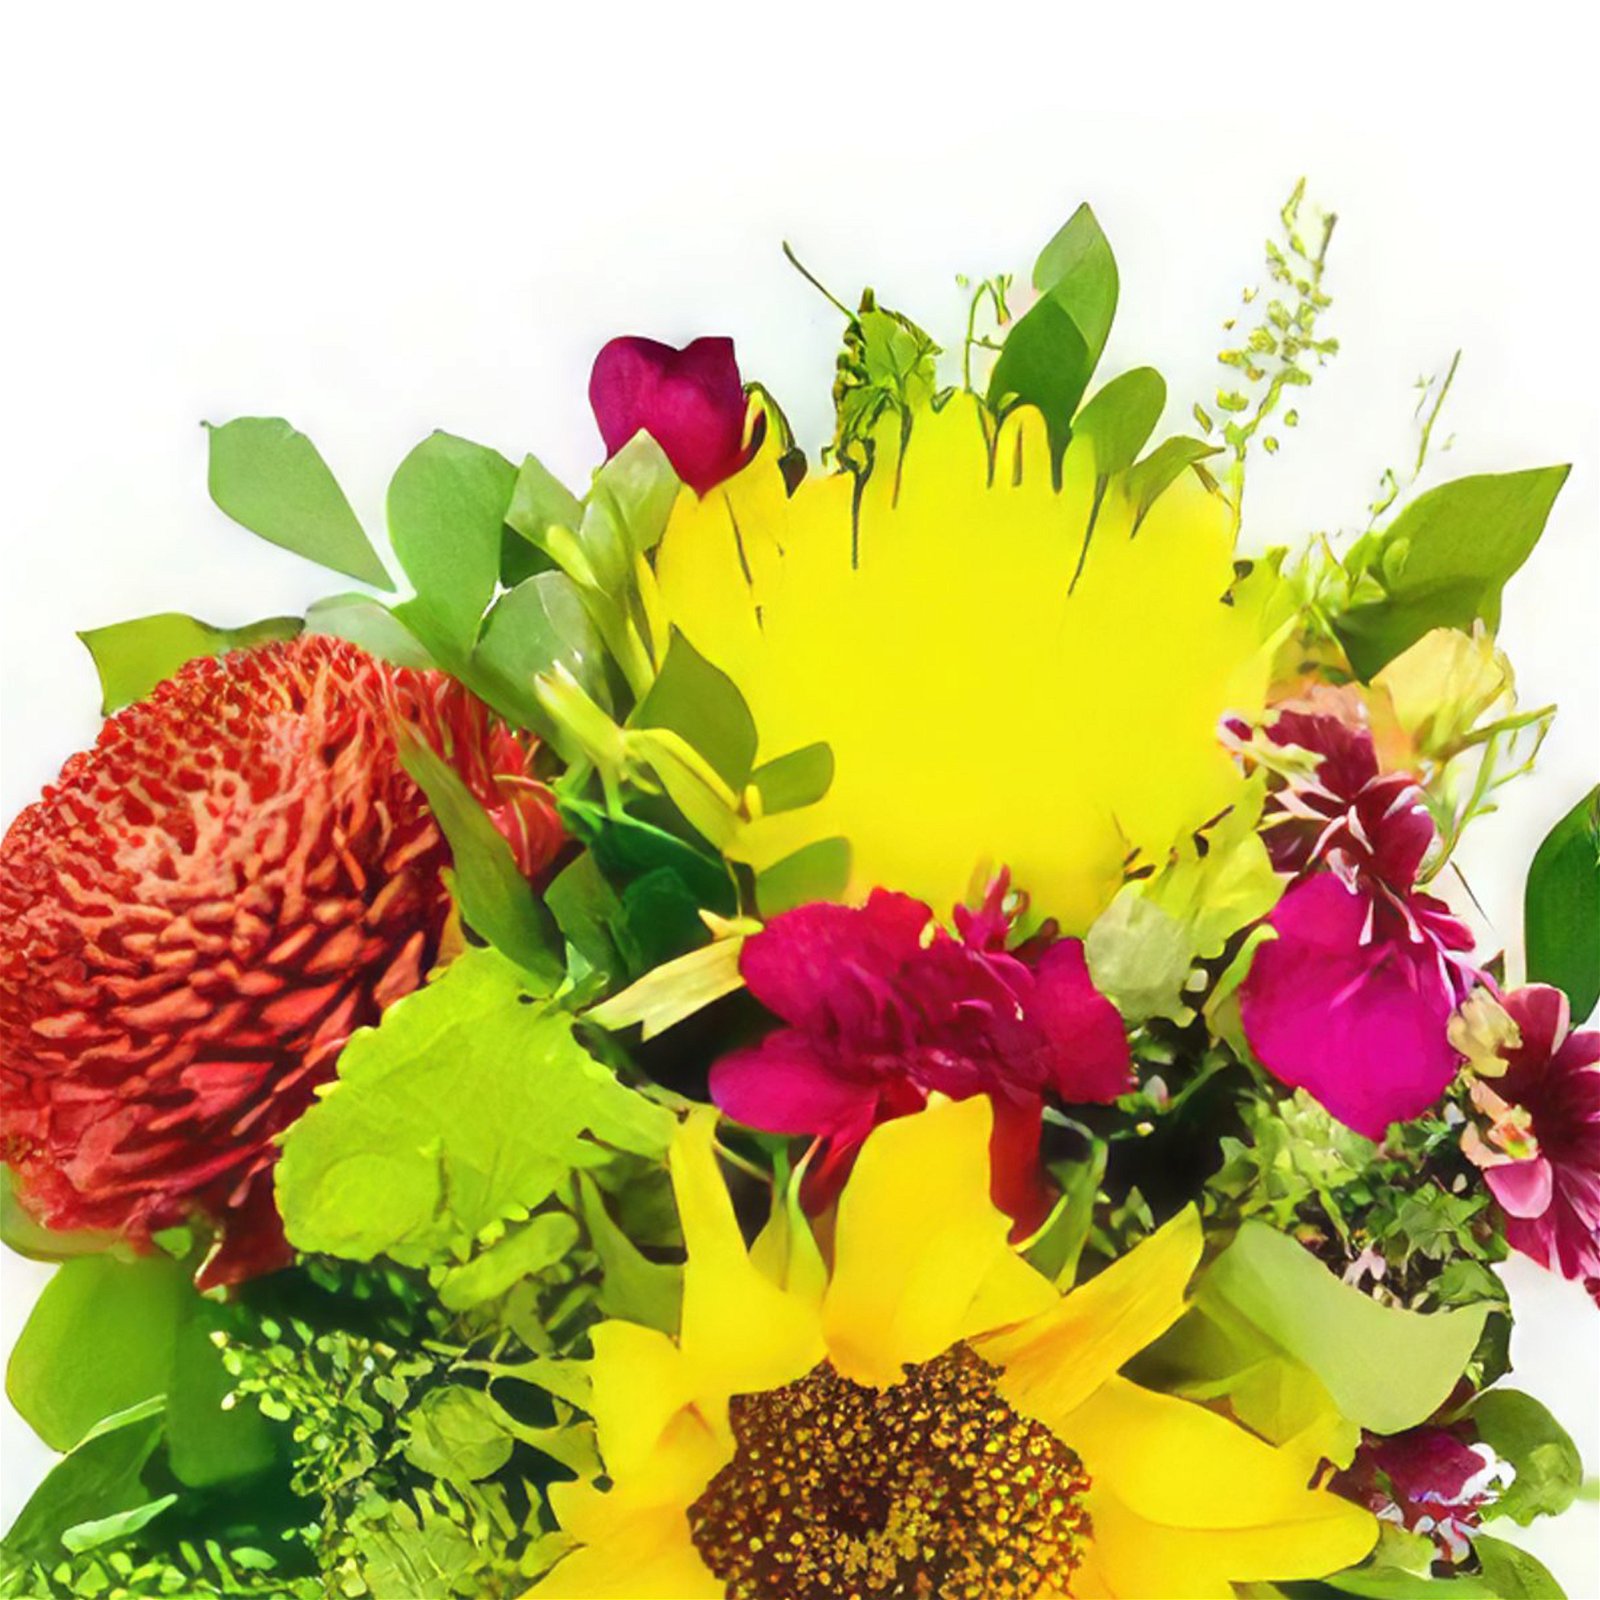 fleuriste fleurs de El Sopapo- Amour de printemps Bouquet/Arrangement floral